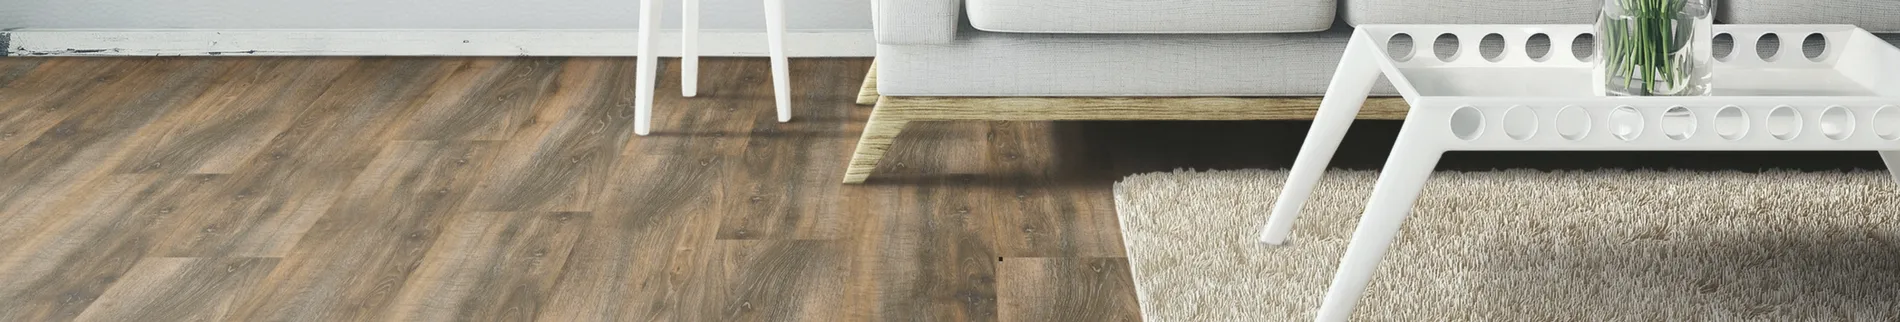 coretec plus flooring in livingroom